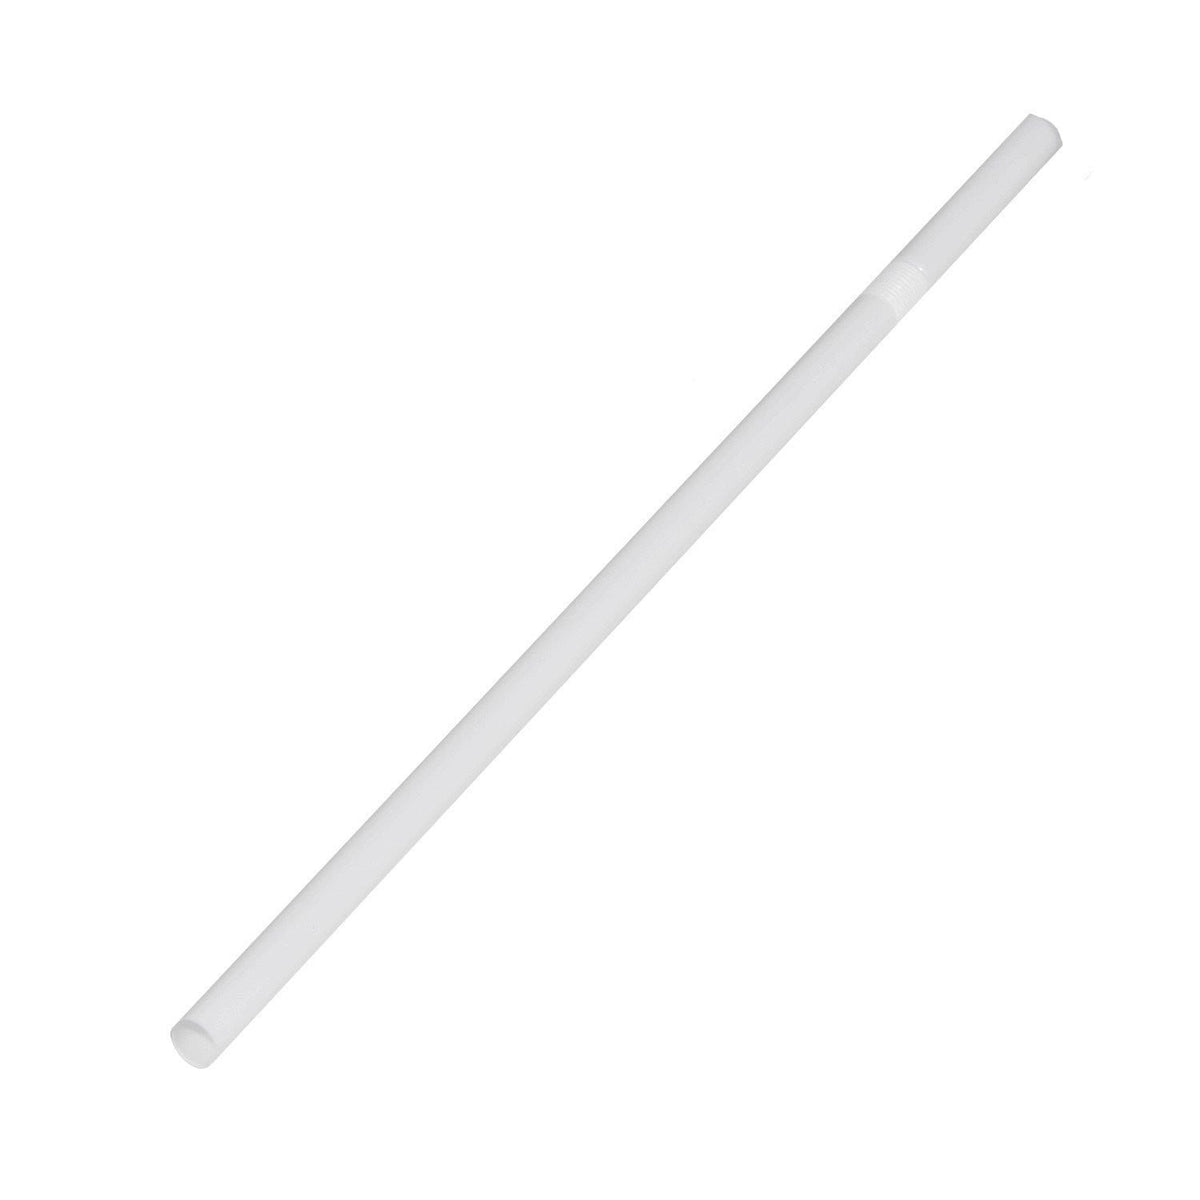 7.75 Flex Paper Wrapped Plastic Straws, White